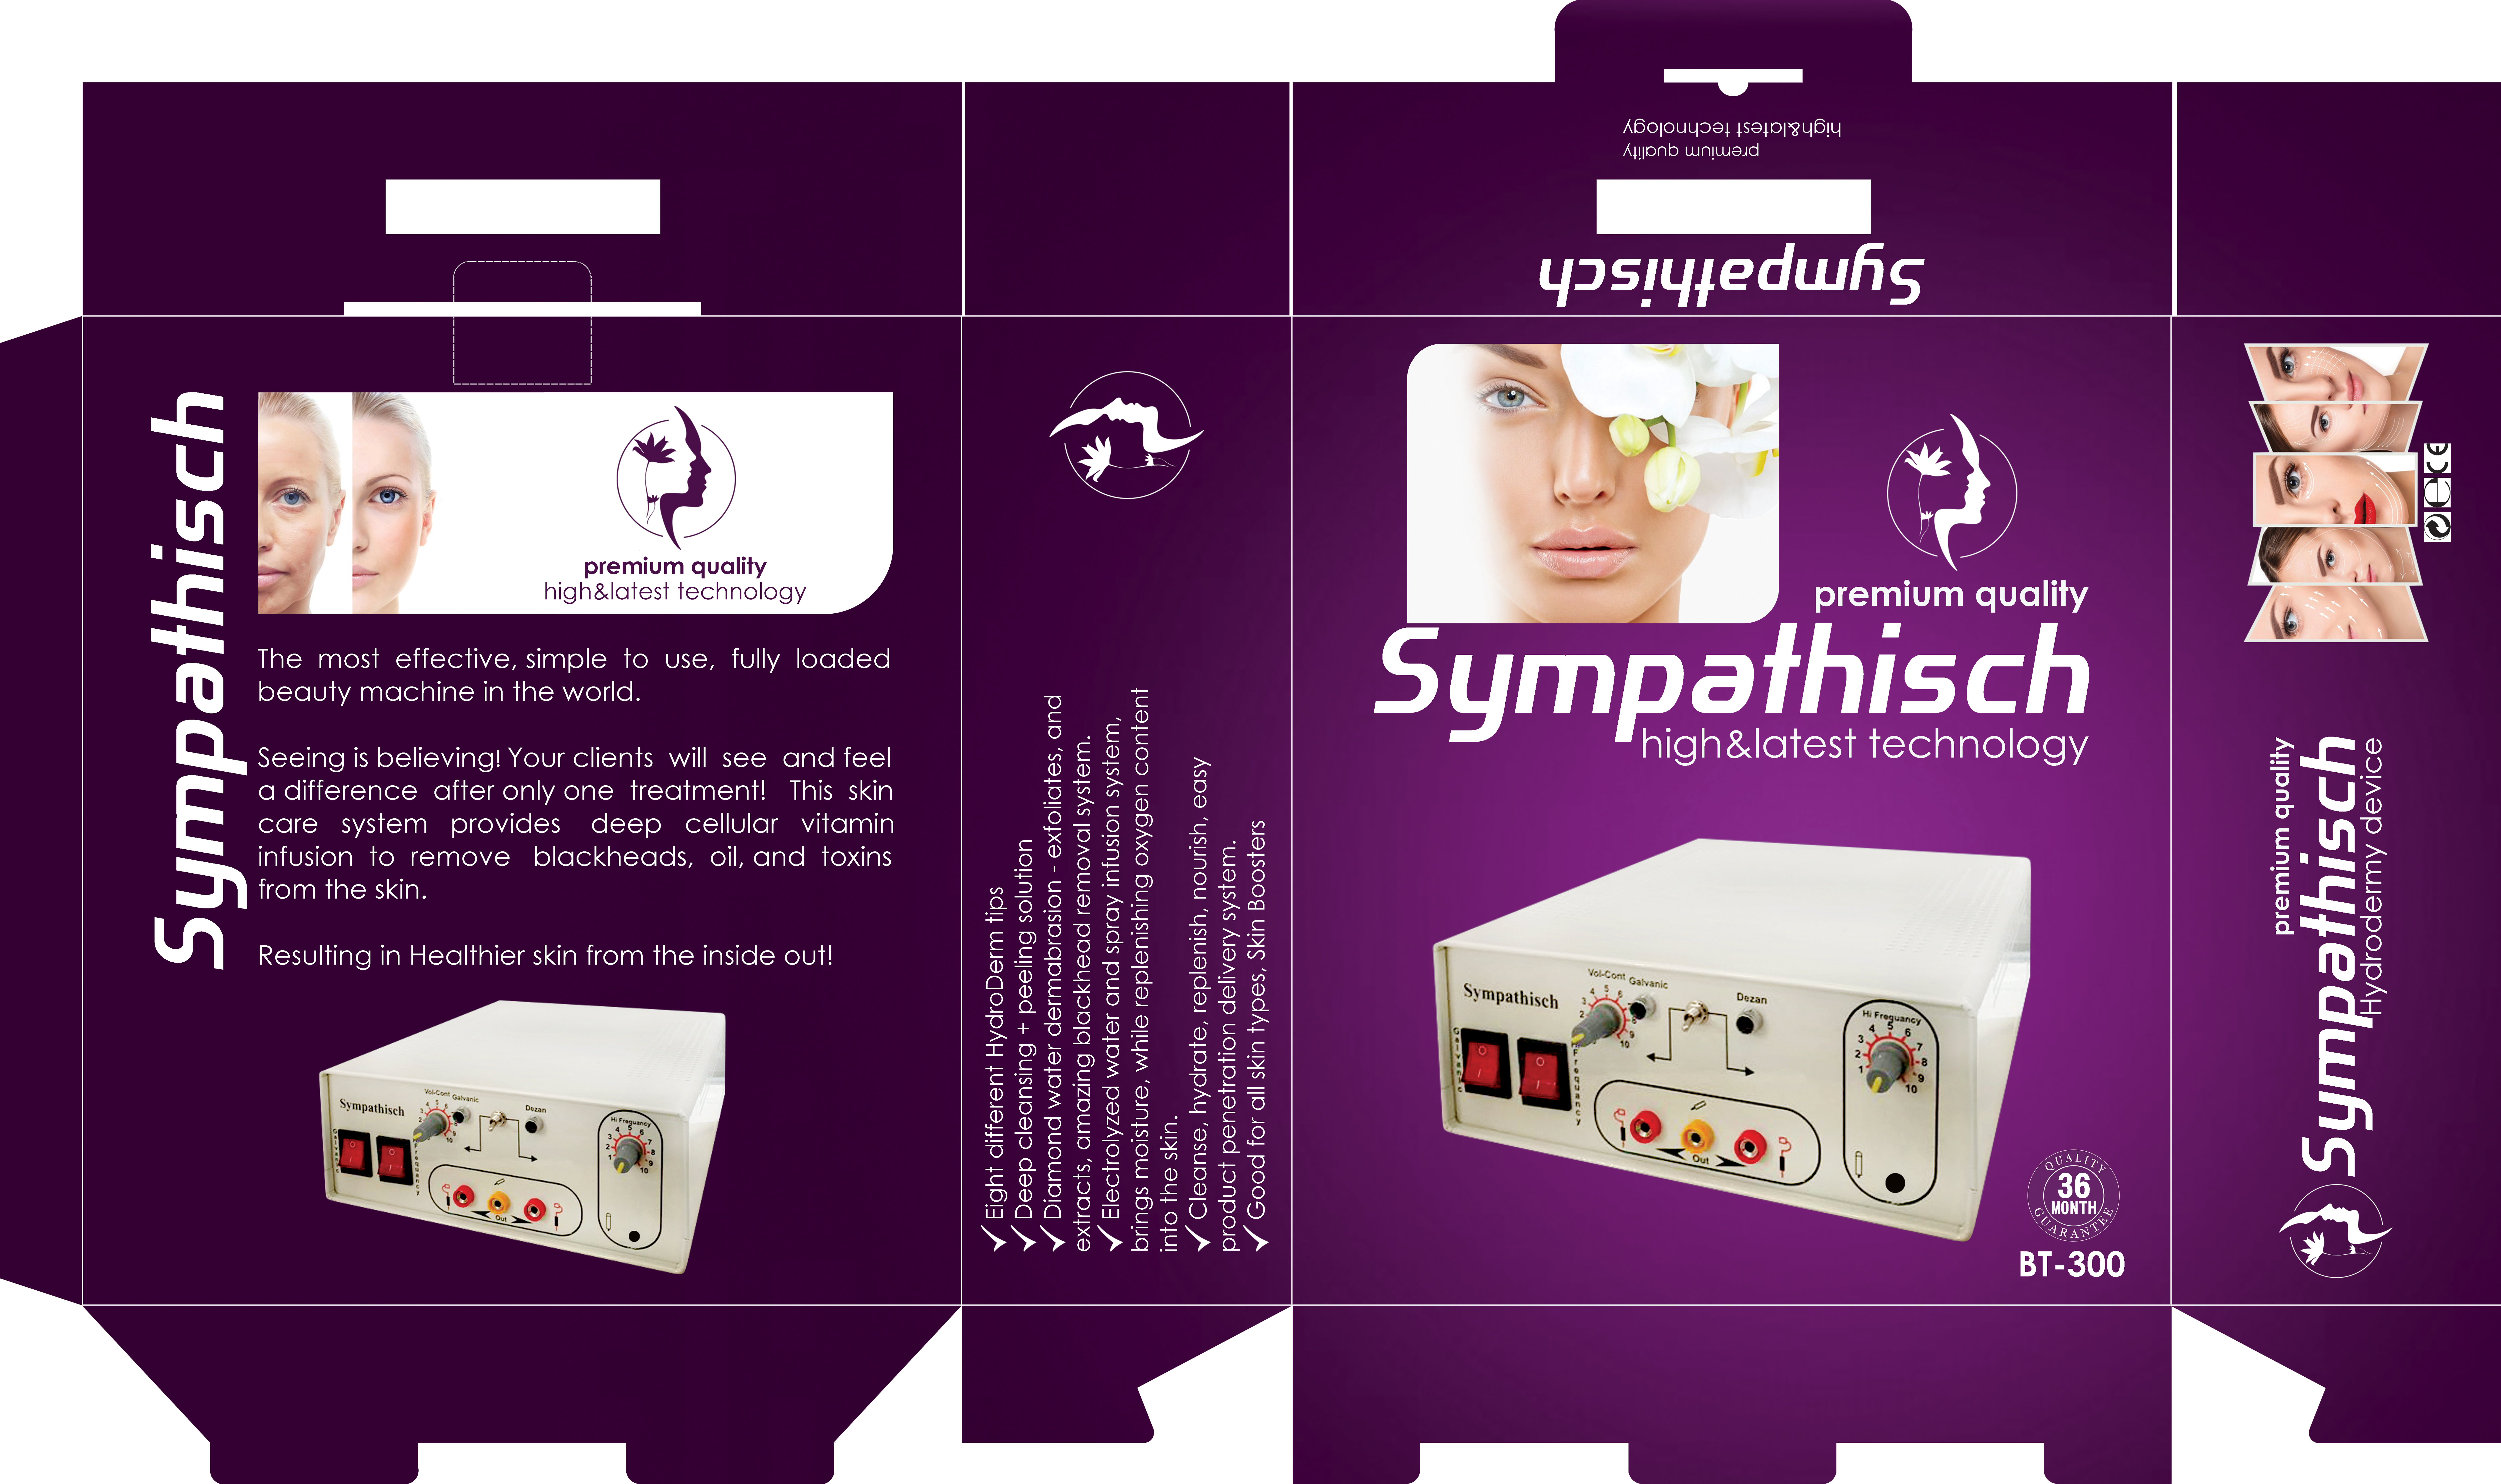 دستگاه هیدرودرمی سمپاتیچ(گالوانیک)10 کاره دیجیتالی با پنل هوشمند